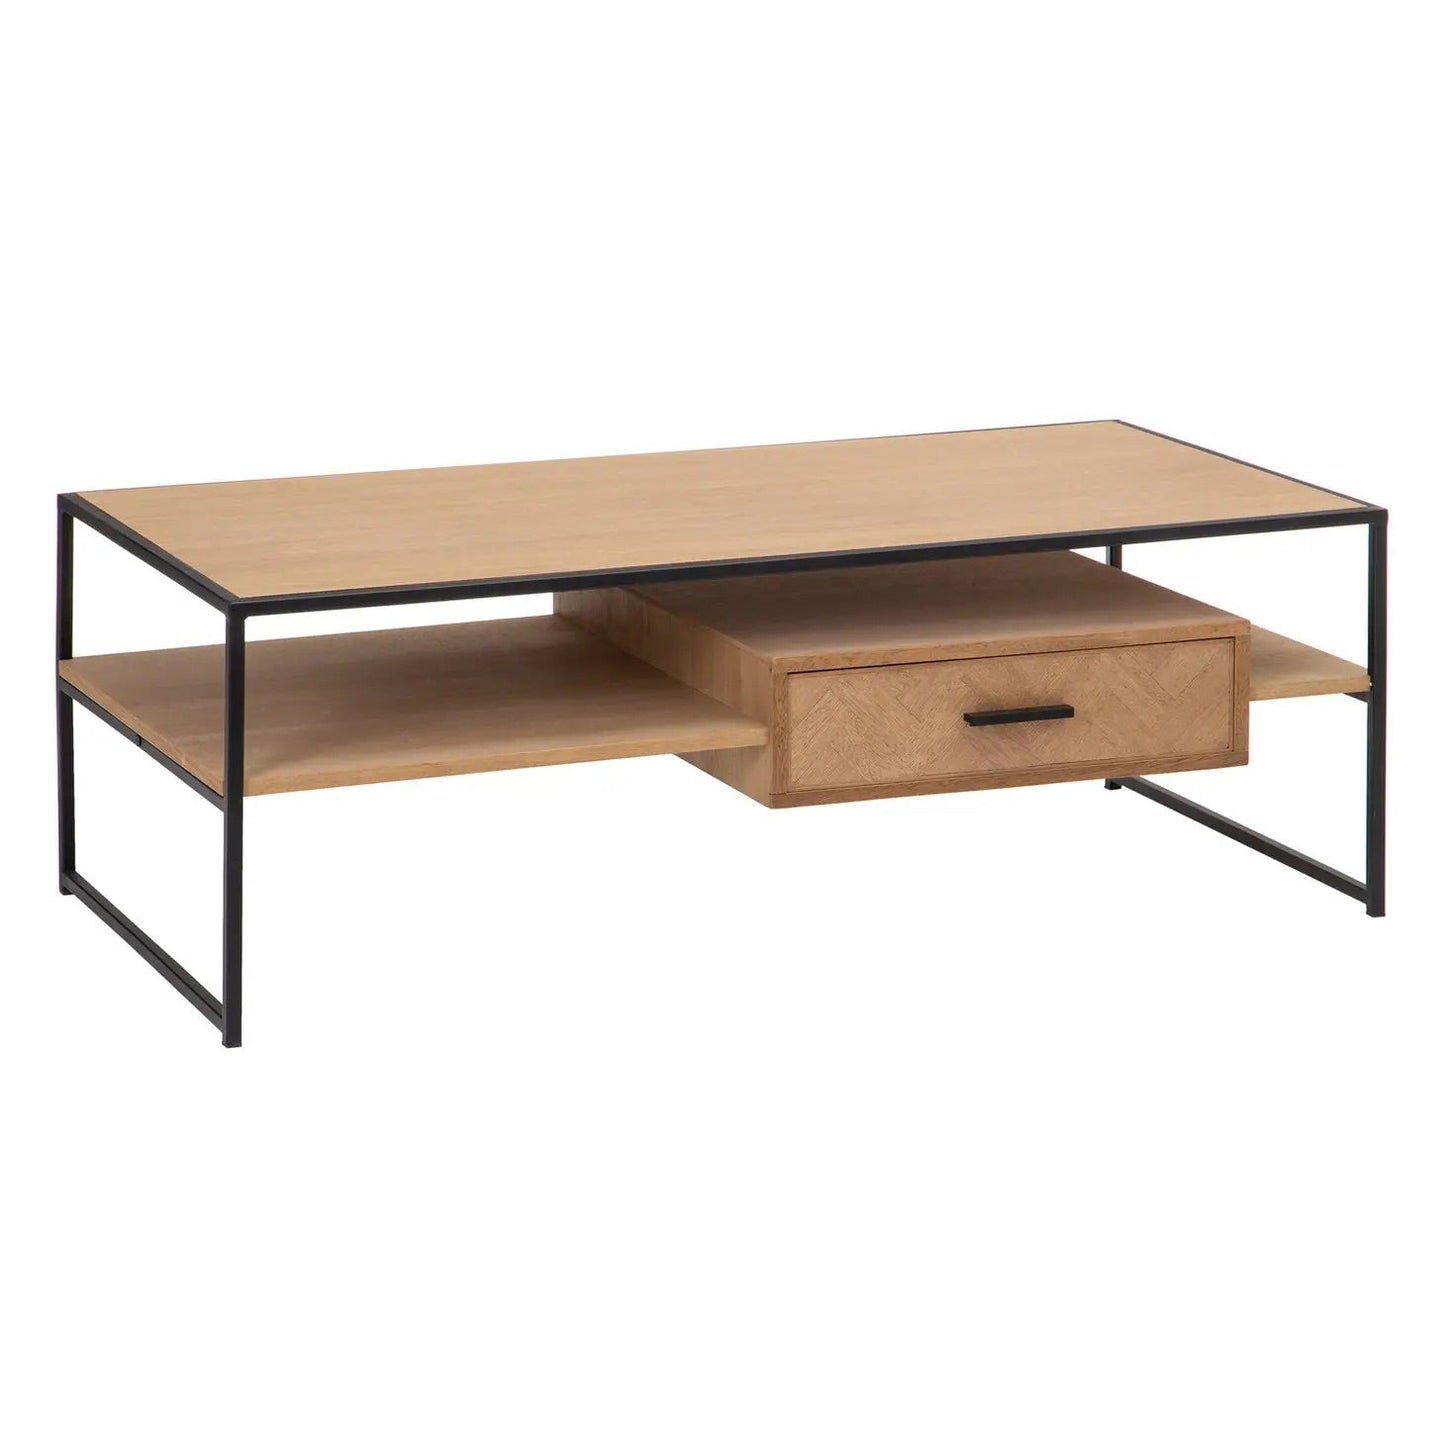 Herringbone Wood Coffee Table with Drawer Shelf Storage